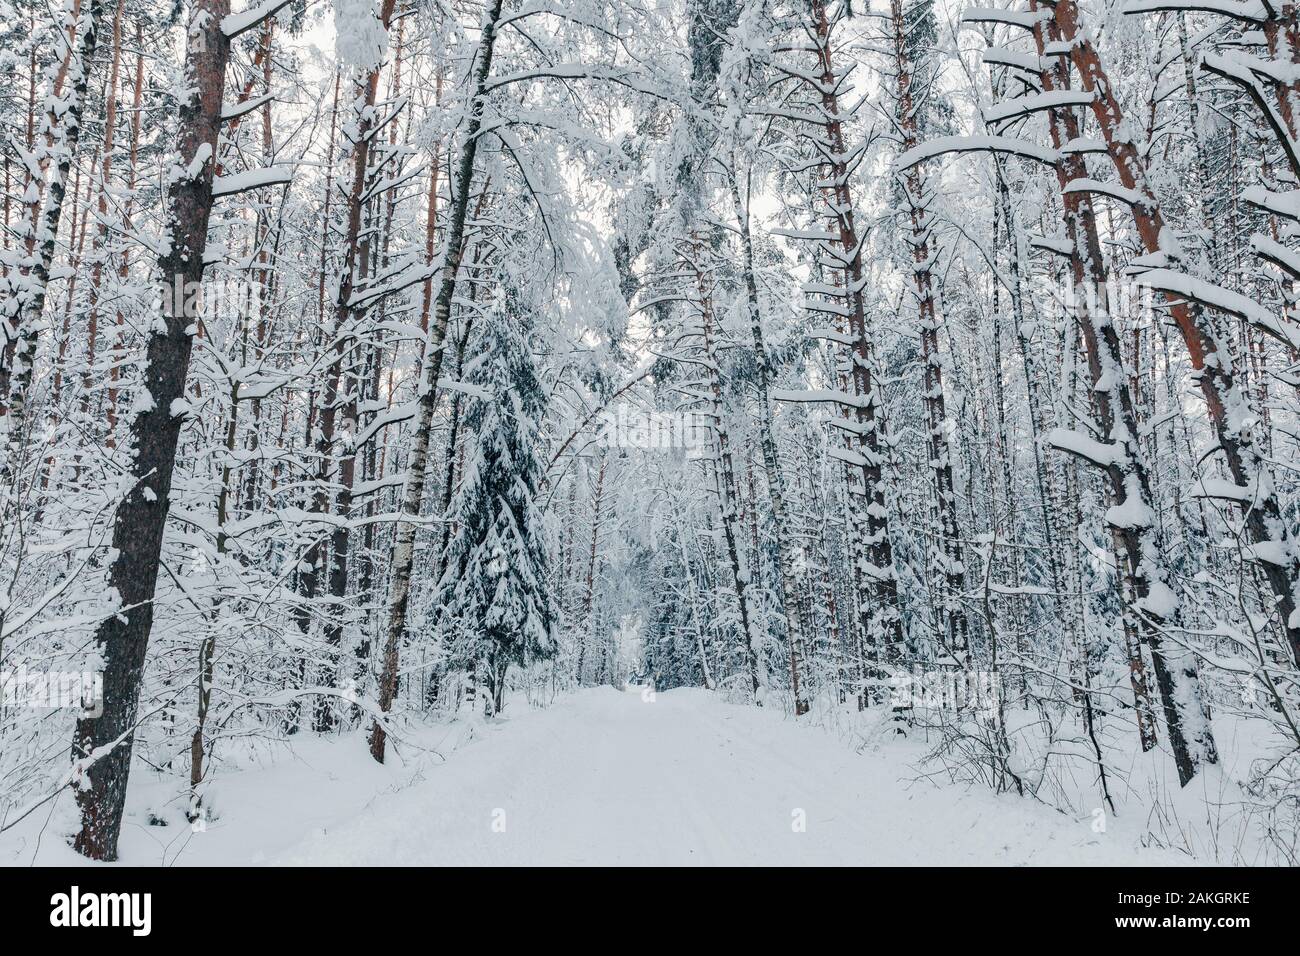 Winter forest road et d'arbres couverts de neige, de l'oblast de Moscou, Russie Banque D'Images